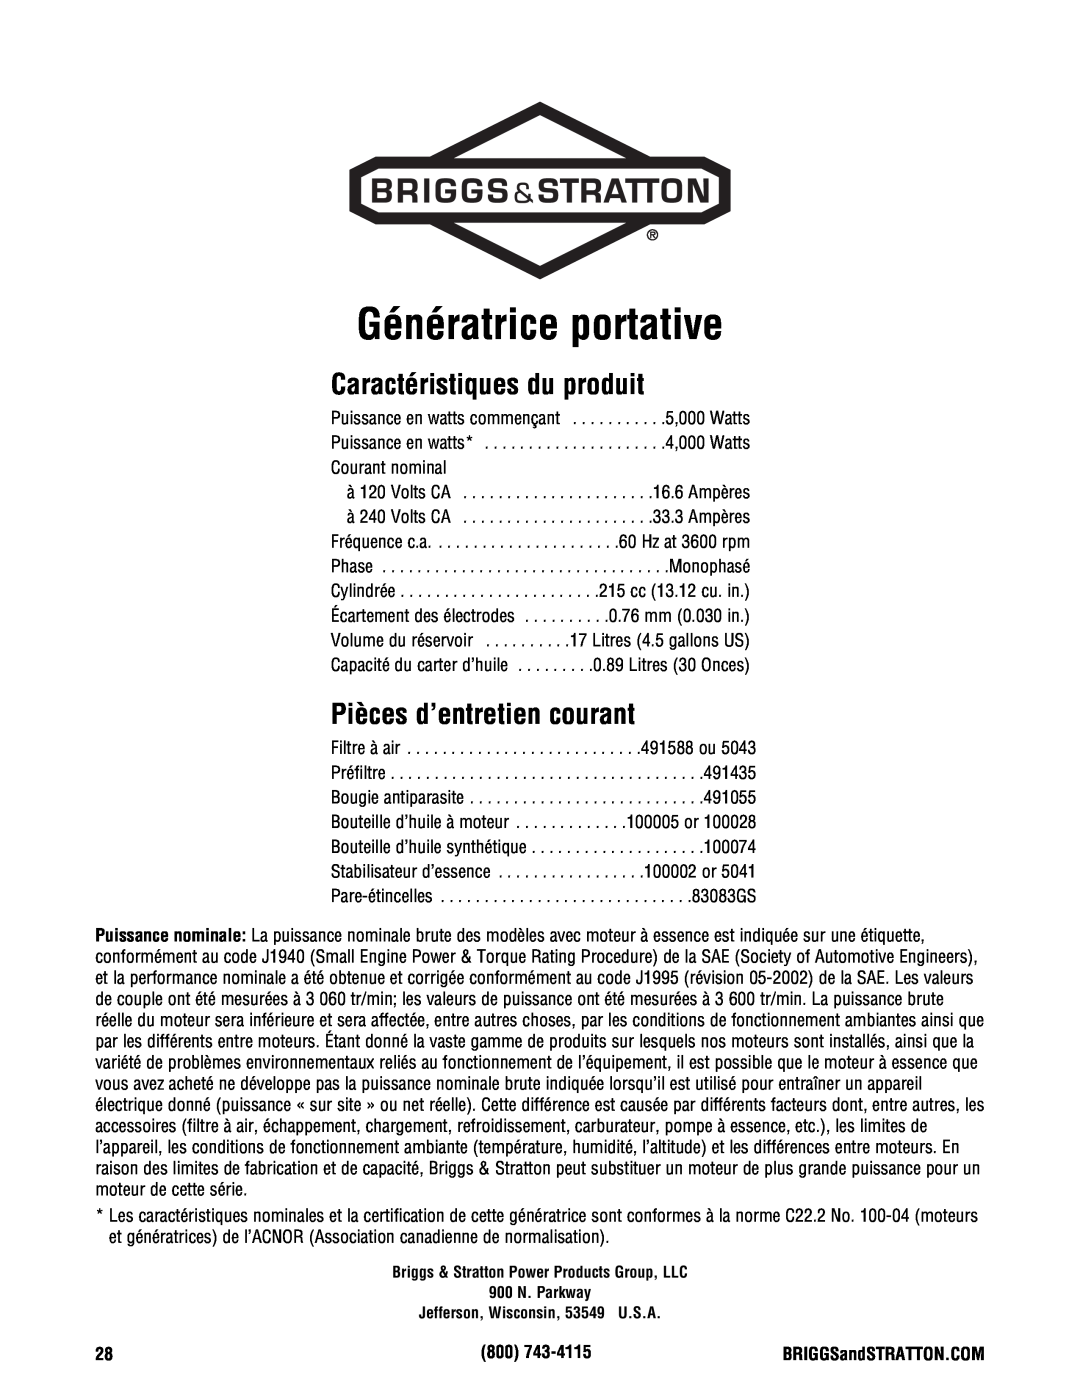 Briggs & Stratton PRO4000 manual Génératrice portative, Caractéristiques du produit, Pièces d’entretien courant 